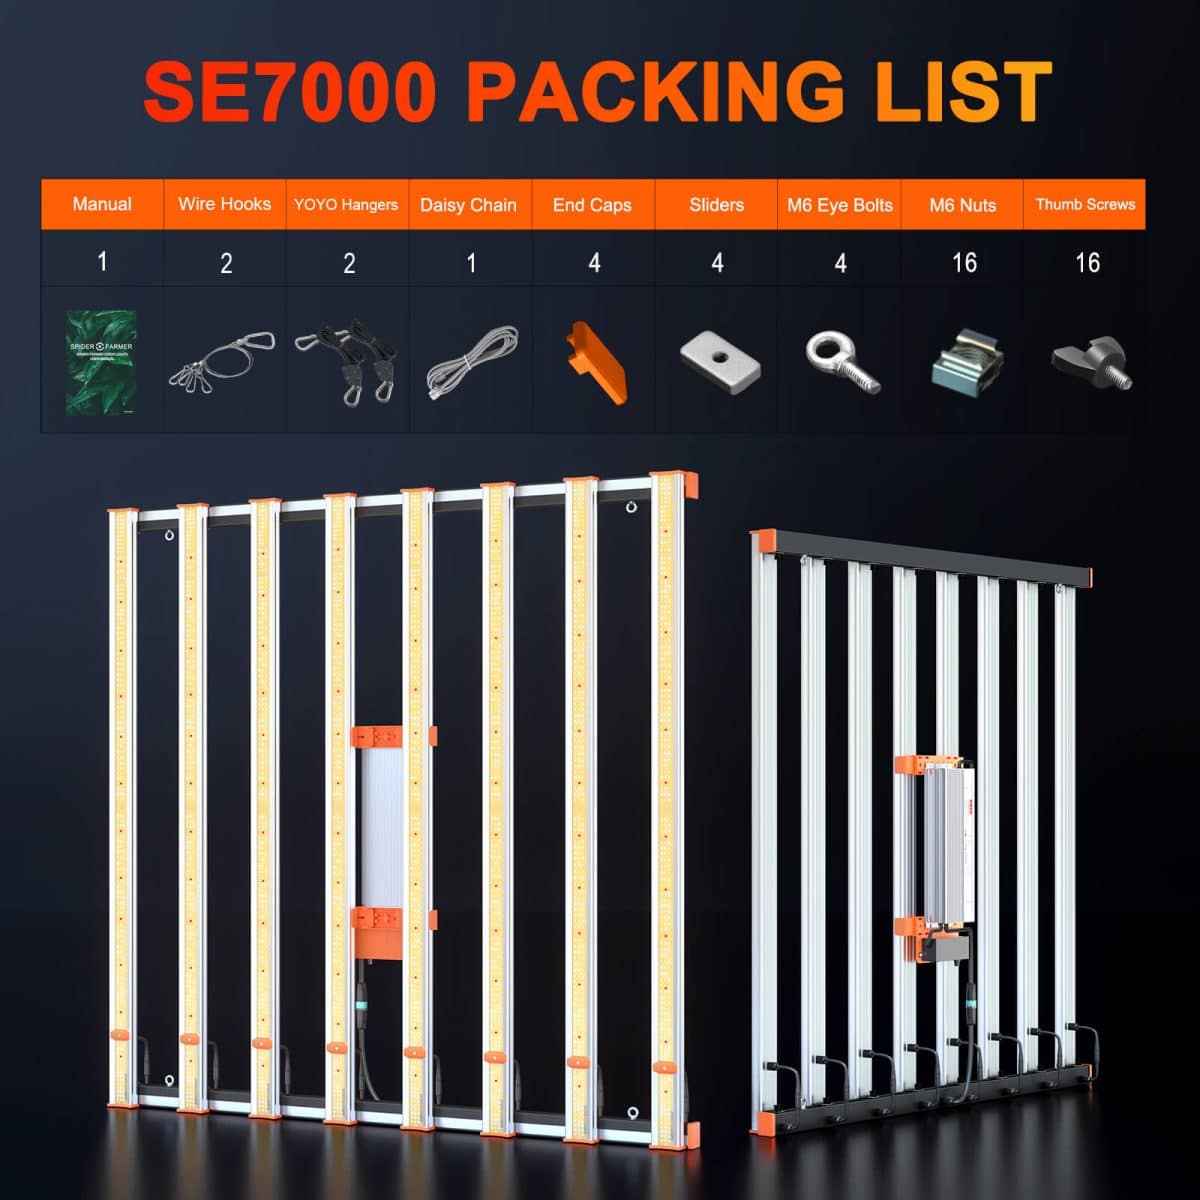 SE7000-Accessories includes